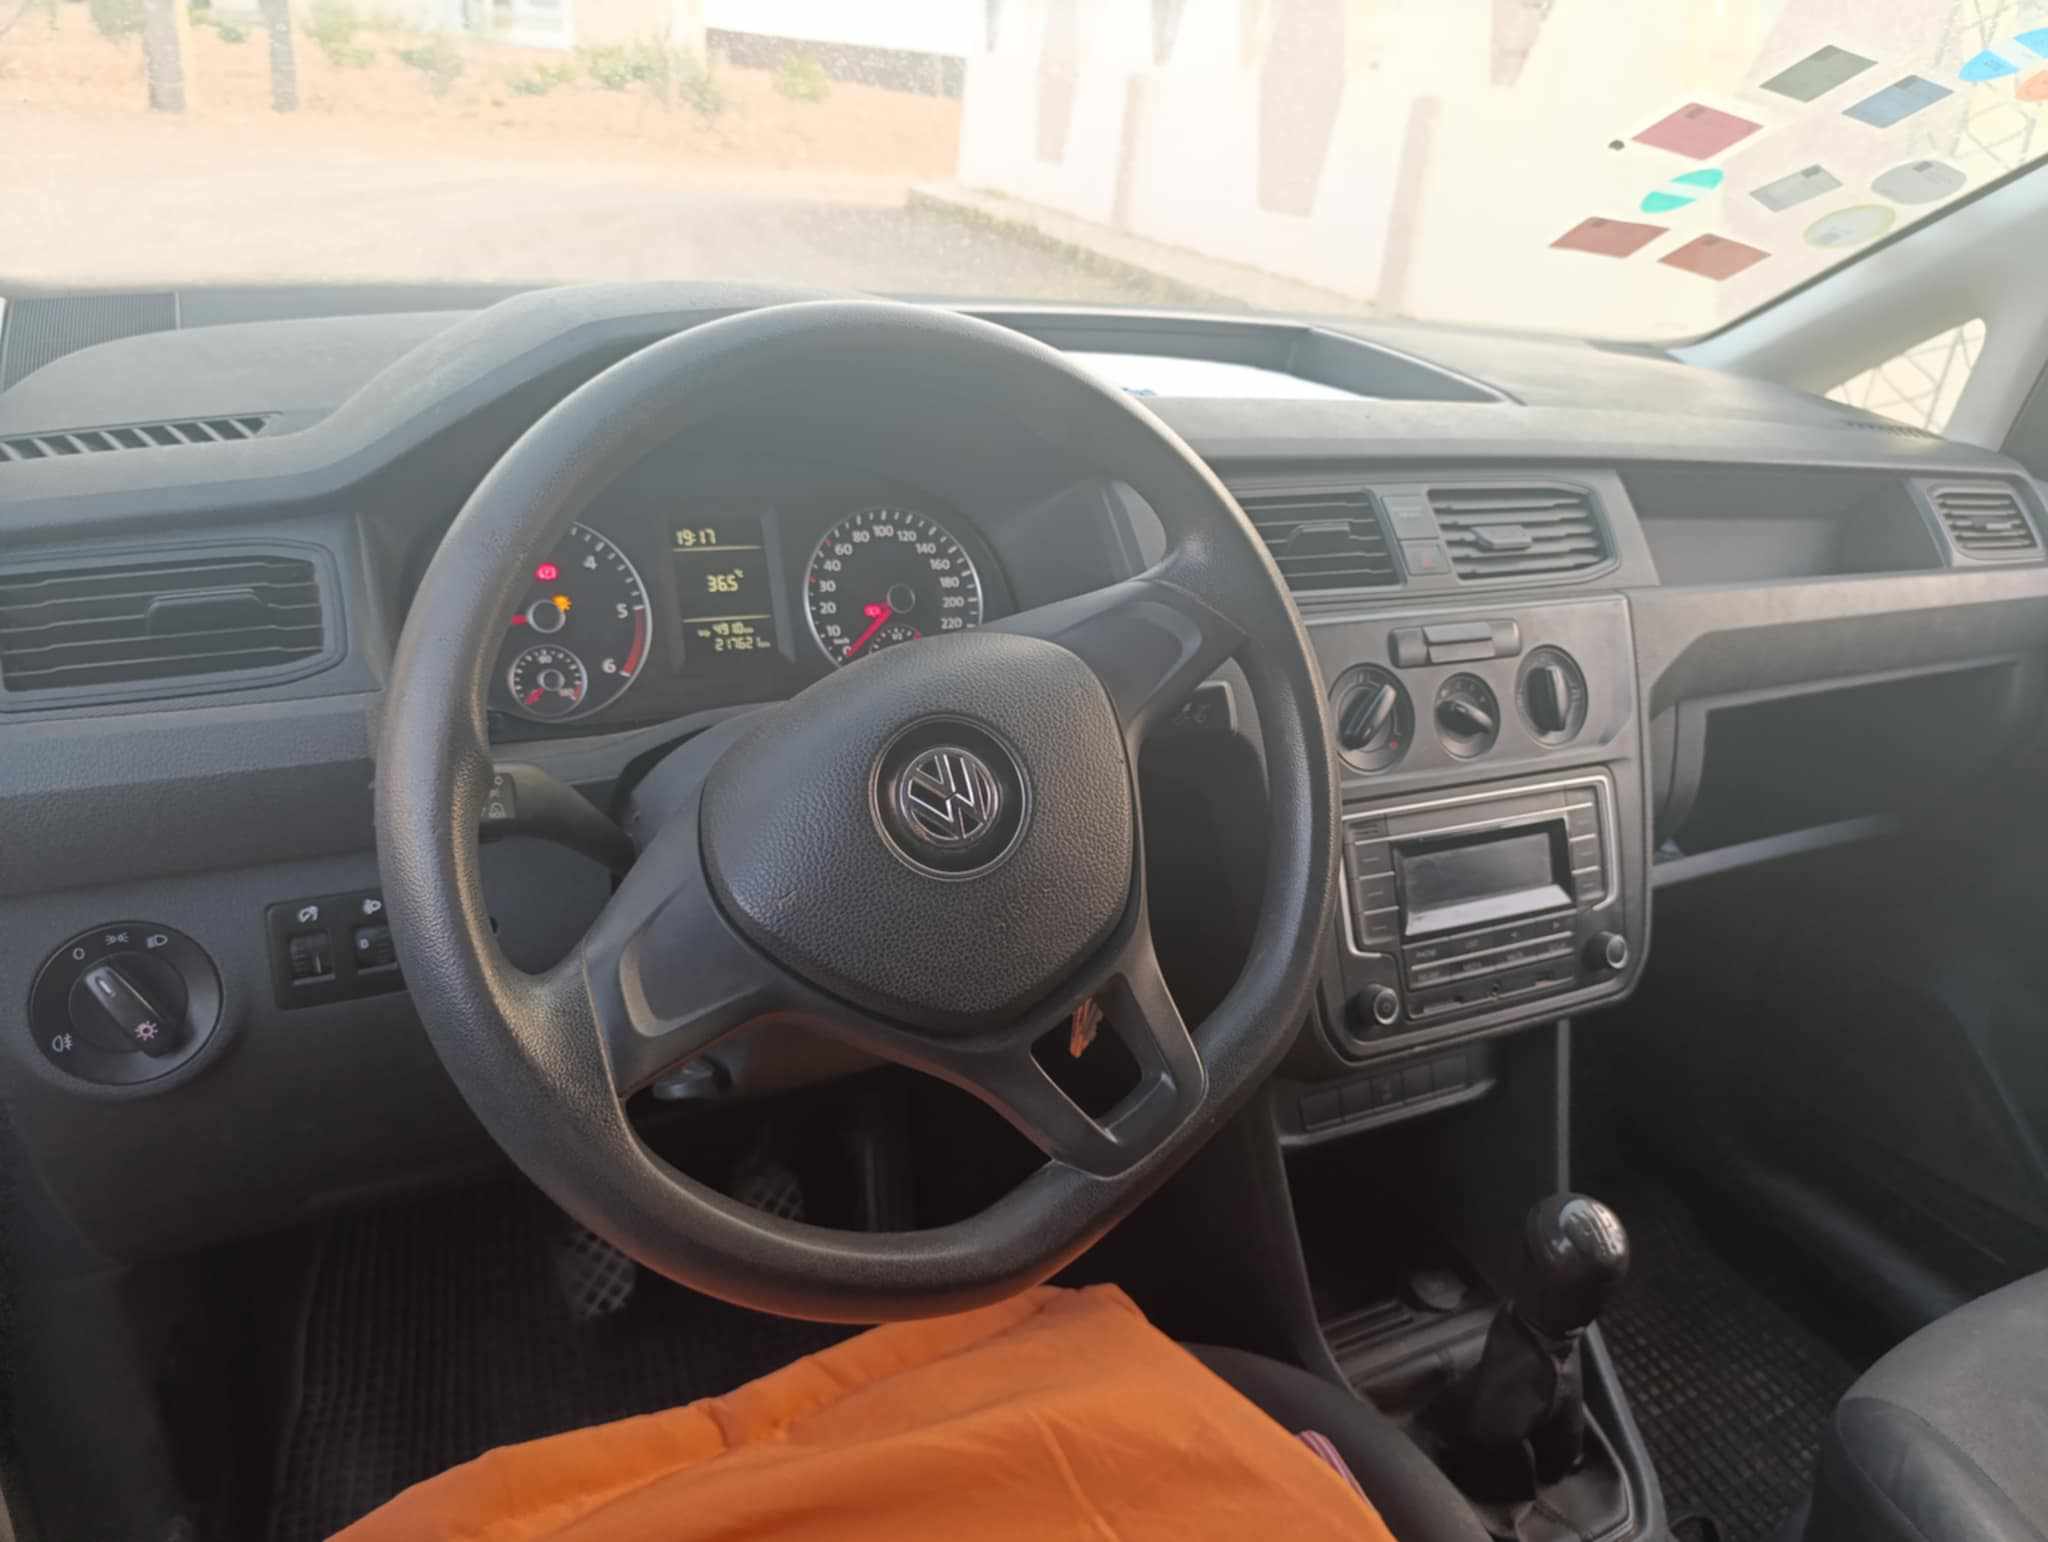 Volkswagen Caddy - Tunisie